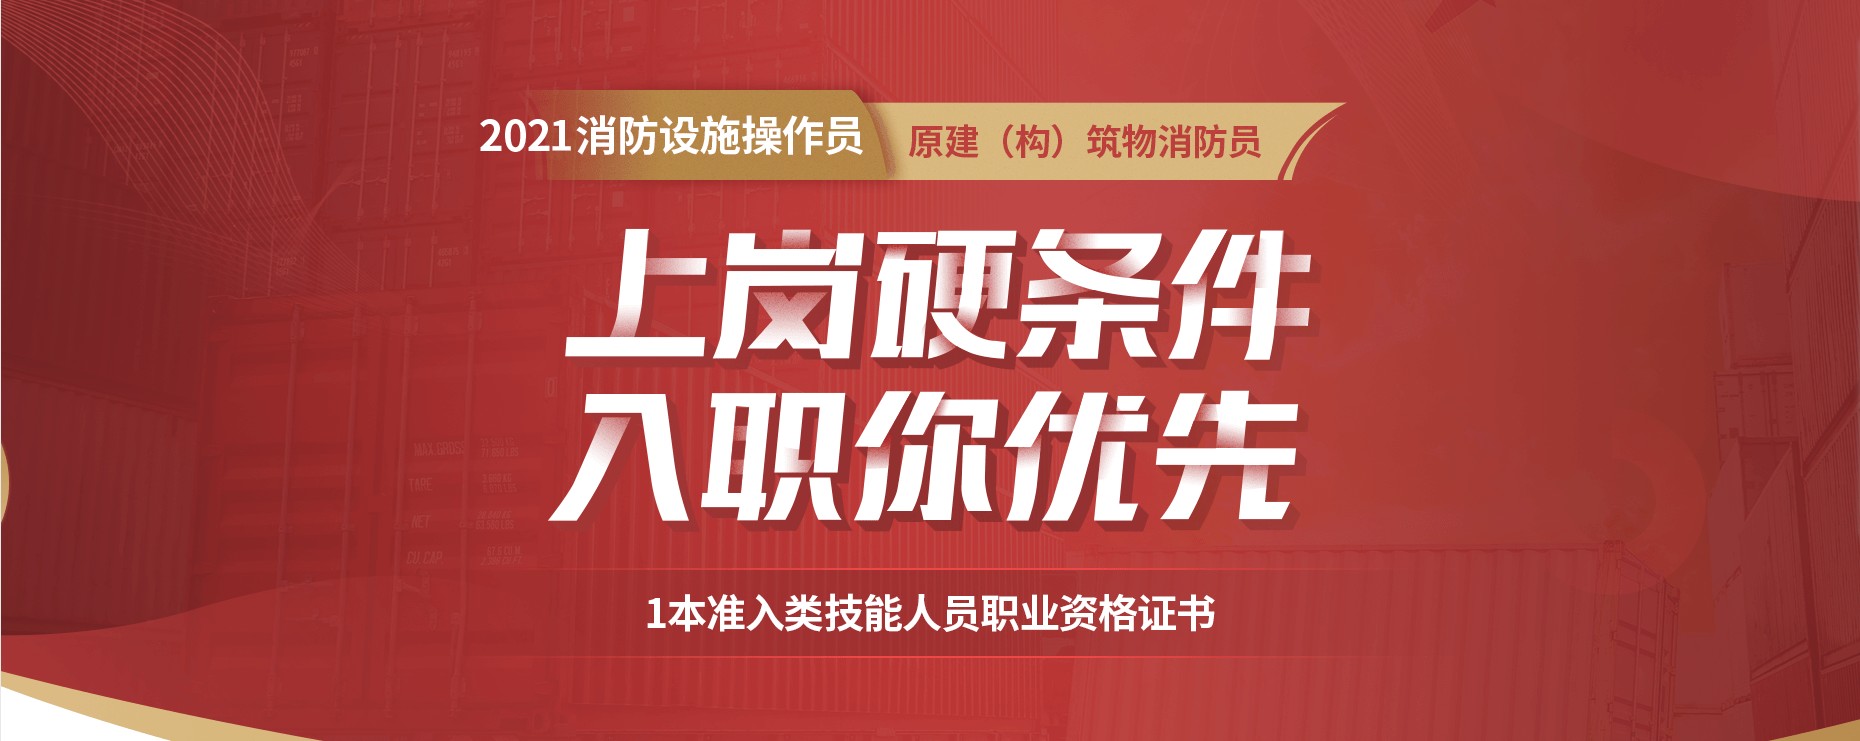 上海消防设施操作员培训机构,上海学消防设施操作员选上海优路教育机构